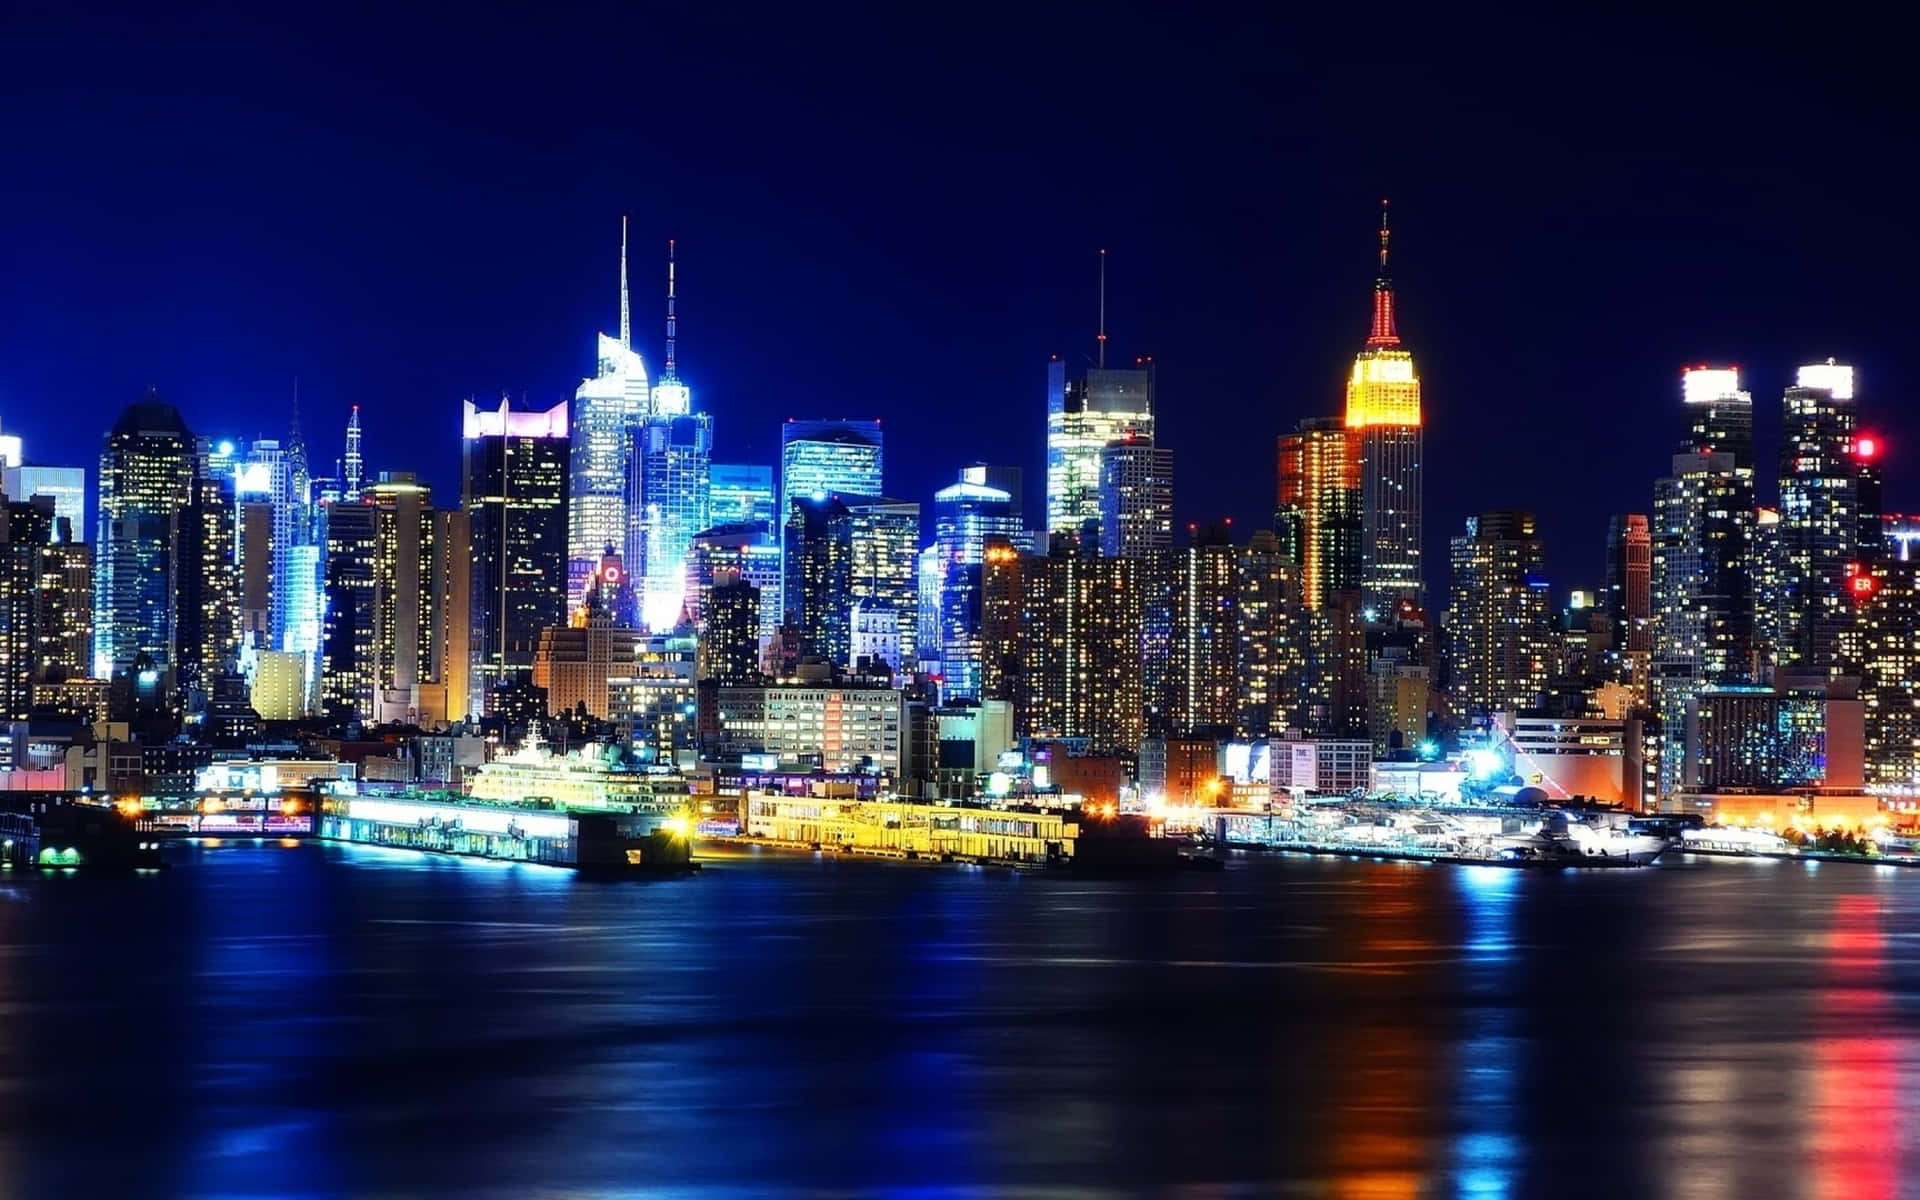 Cidadecom Luzes Brilhantes, Melhor Papel De Parede De Nova York.